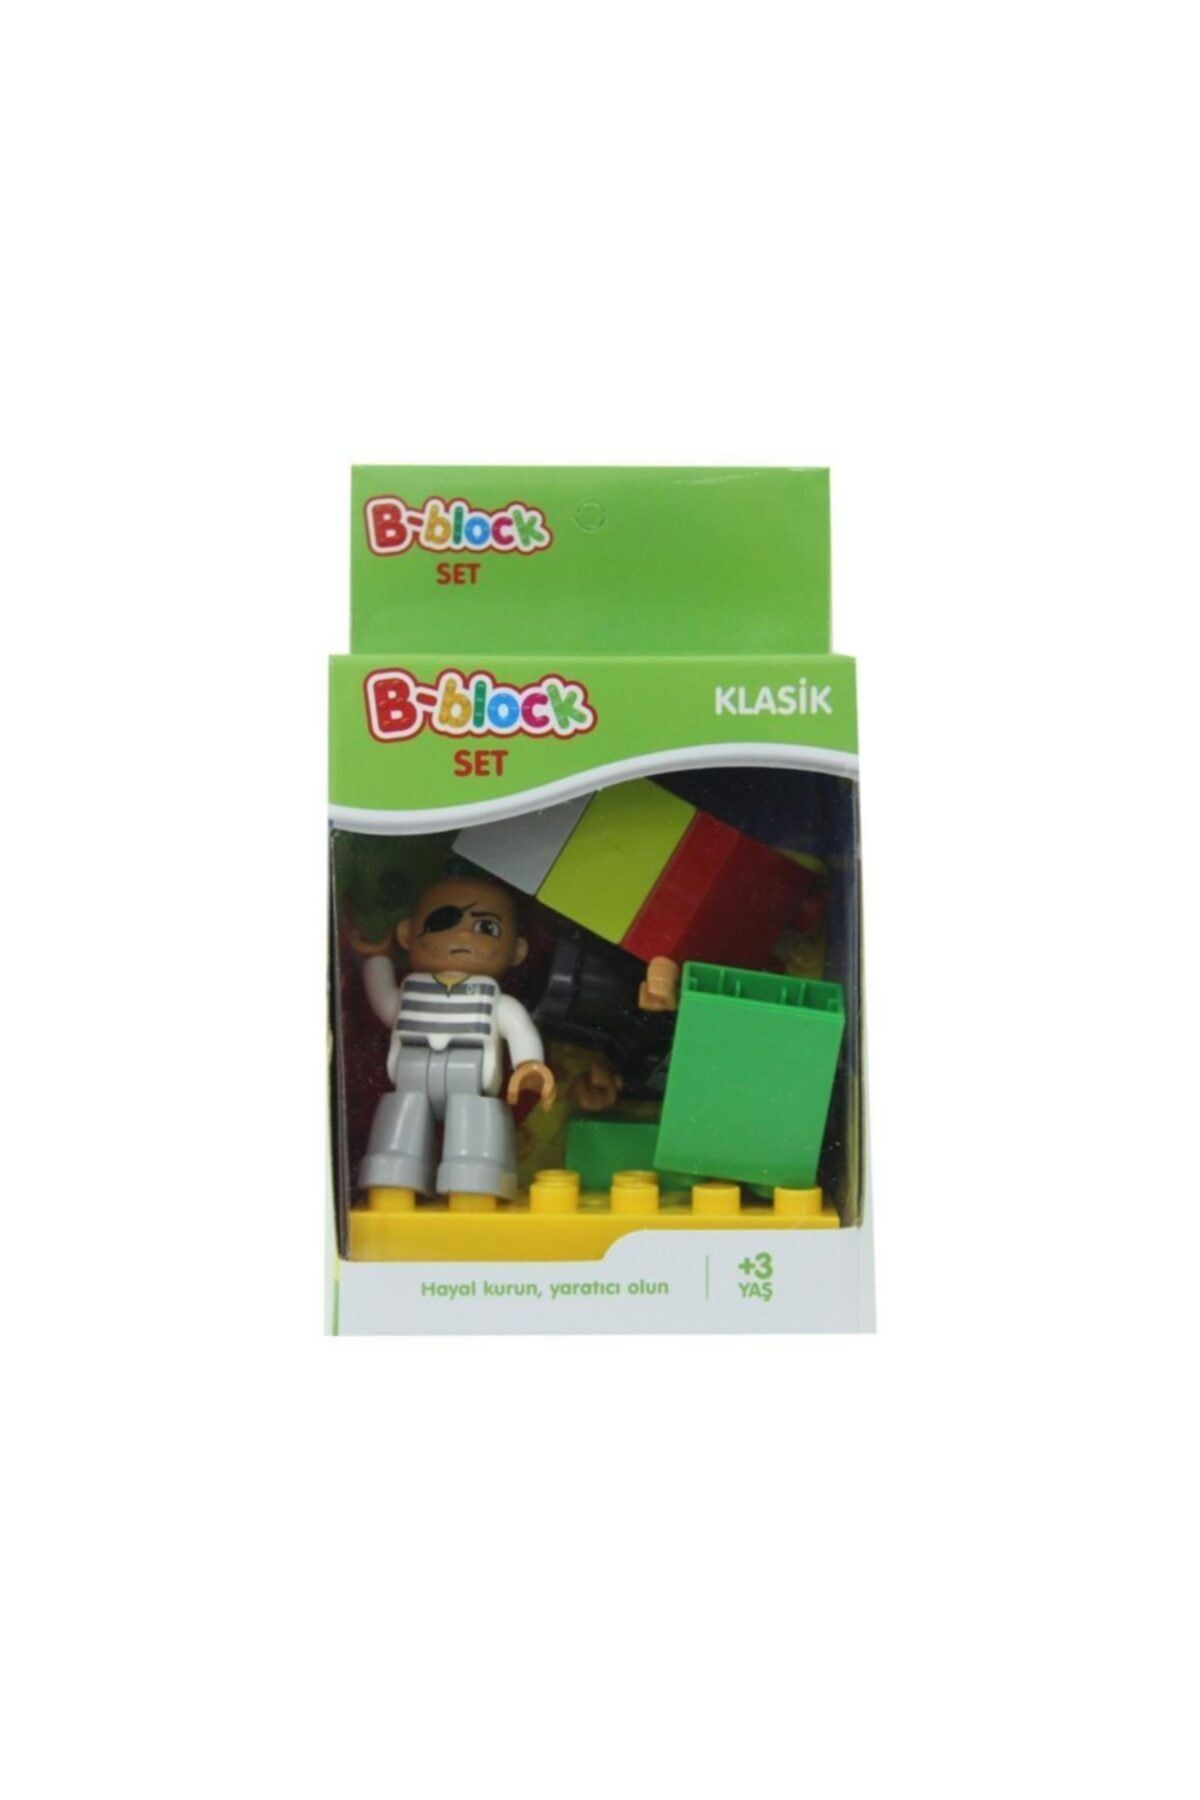 Birlik Oyuncak Klasik Mini Lego B-block Set C2308